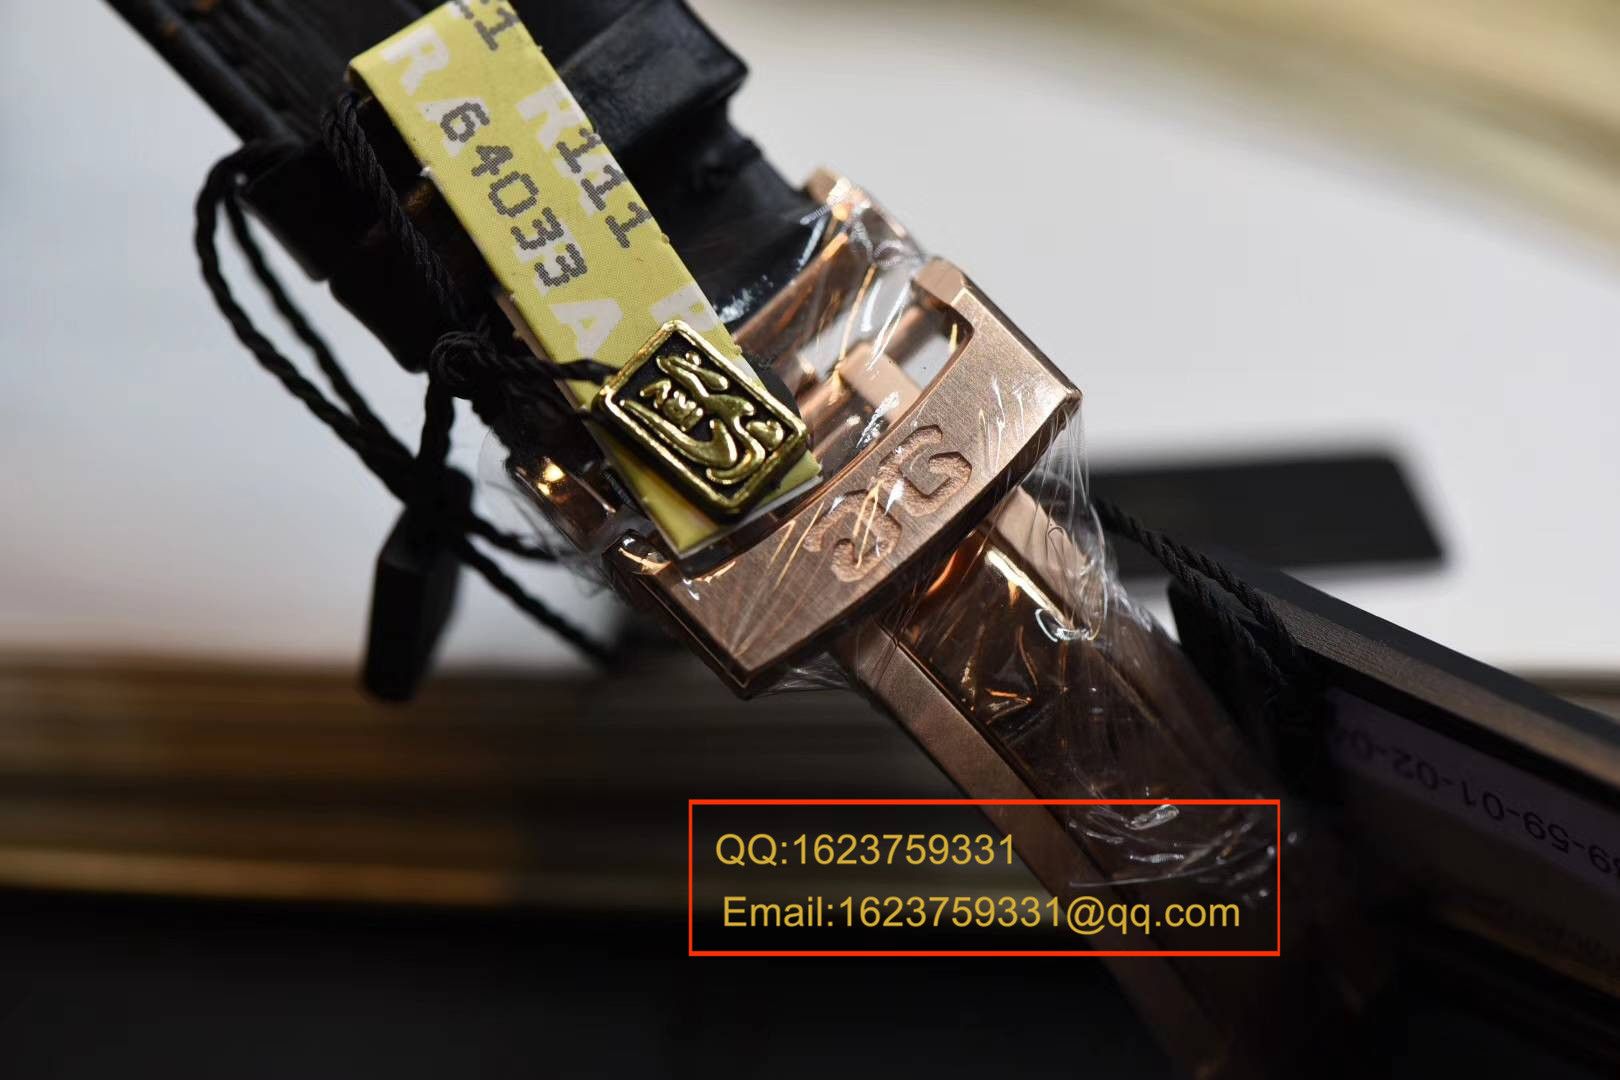 【GF一比一超A高仿手表】格拉苏蒂原创精髓议员大日历月相腕表系列 100-04-32-15-04腕表 / GLABA013